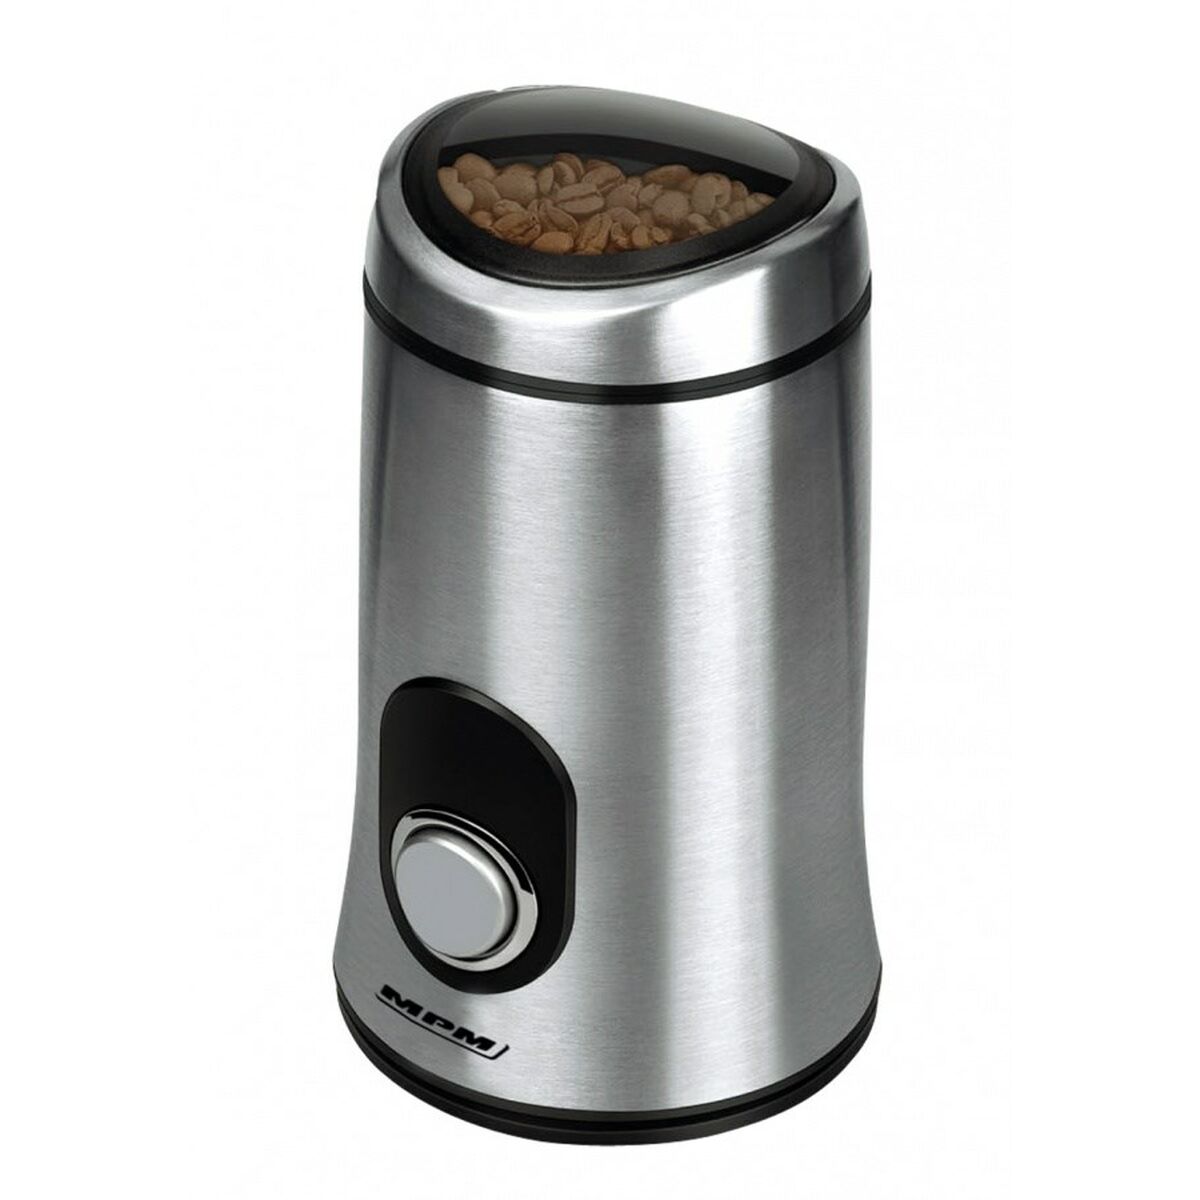 Kaffeemühle Mpm MMK-02M                         Schwarz Durchsichtig Silberfarben Aluminium 150 W - CA International  